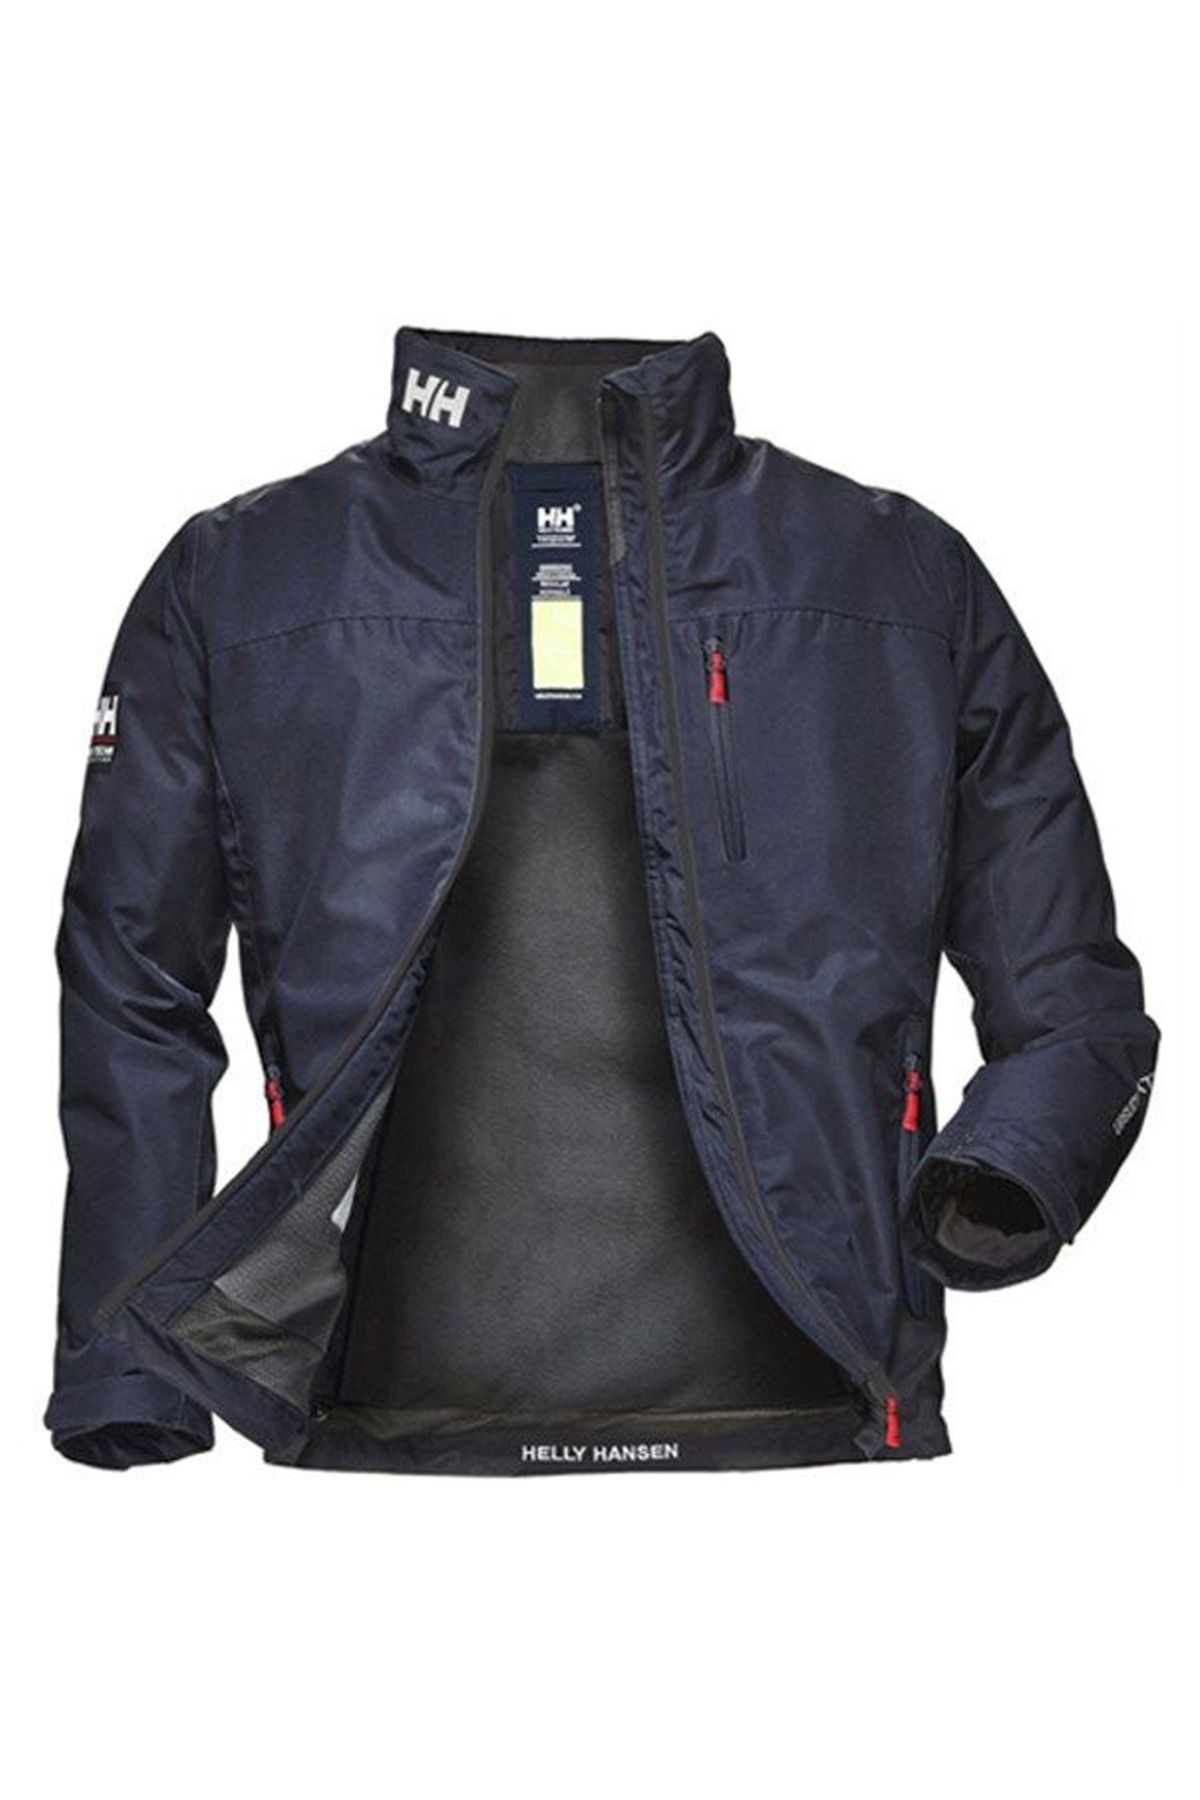 Helly Hansen Crew Midlayer Jacket Erkek Ceket Navy Lacivert